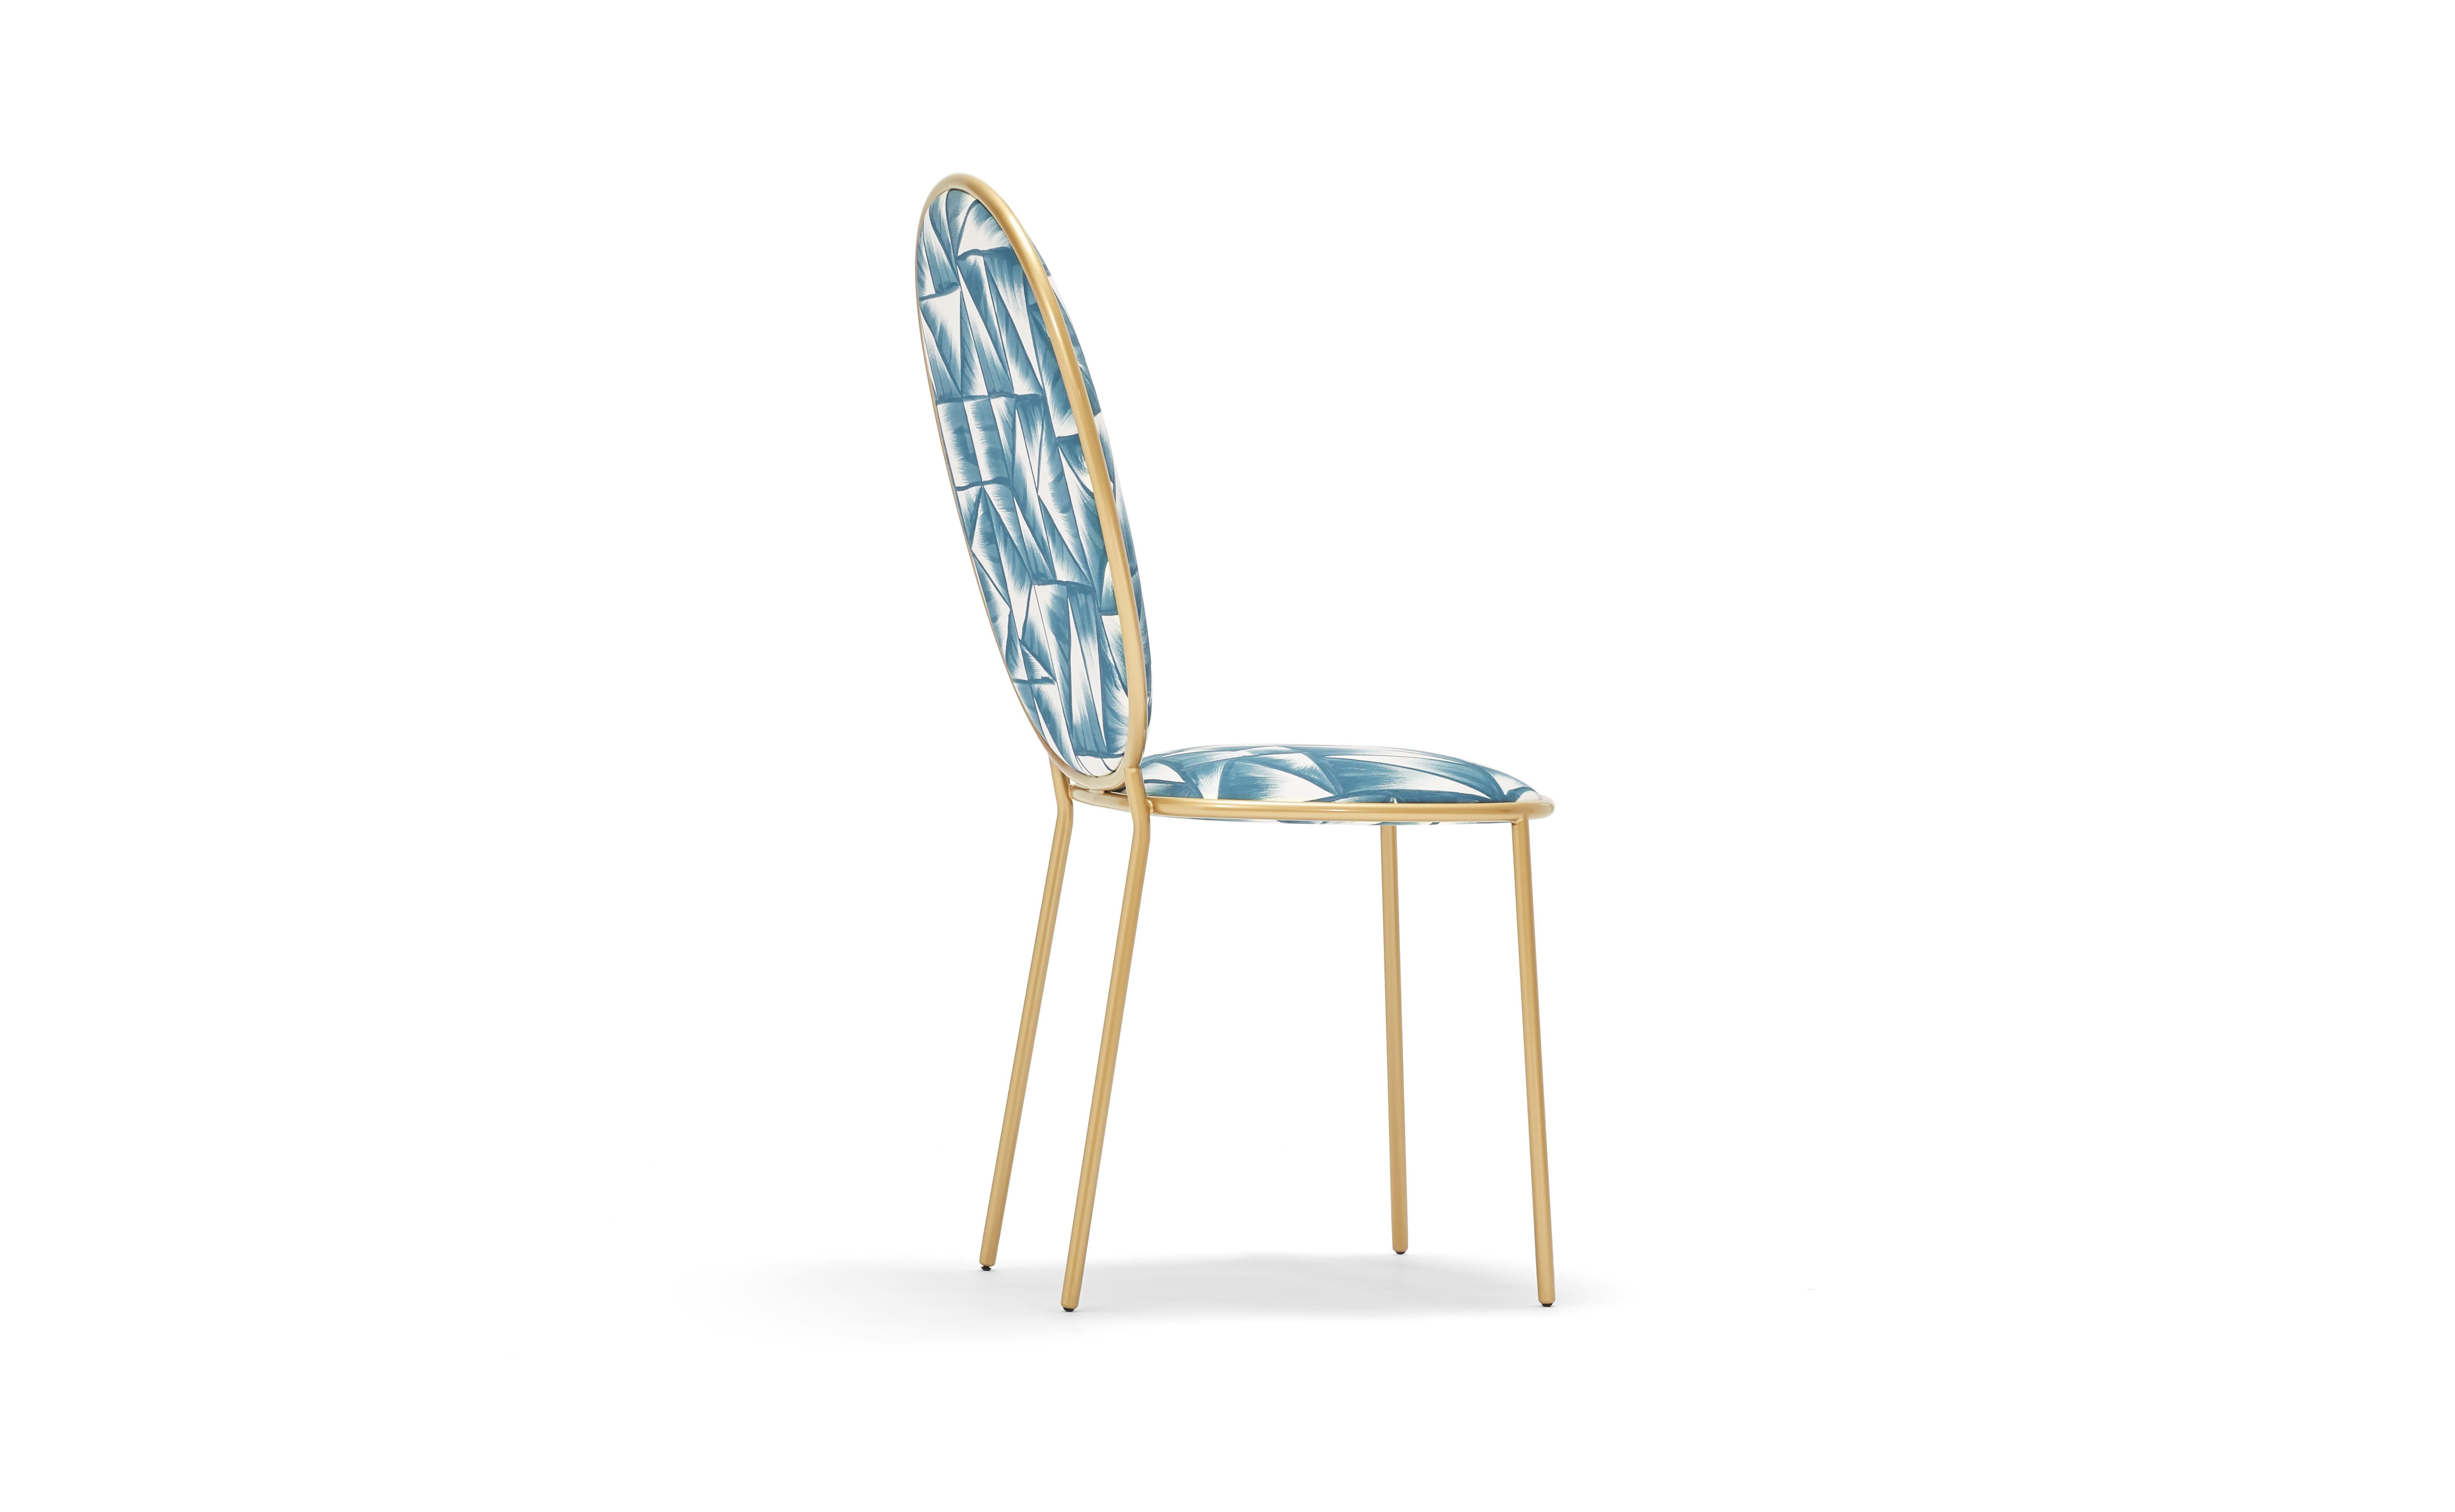 Chaise à manger contemporaine Fresco Blue tapissée - Stay by Nika Zupanc

La famille Stay transforme les repas de tous les jours en une occasion spéciale. La Chaise Dining et le Fauteuil Dining sont des variations sur un thème social élégant, tandis